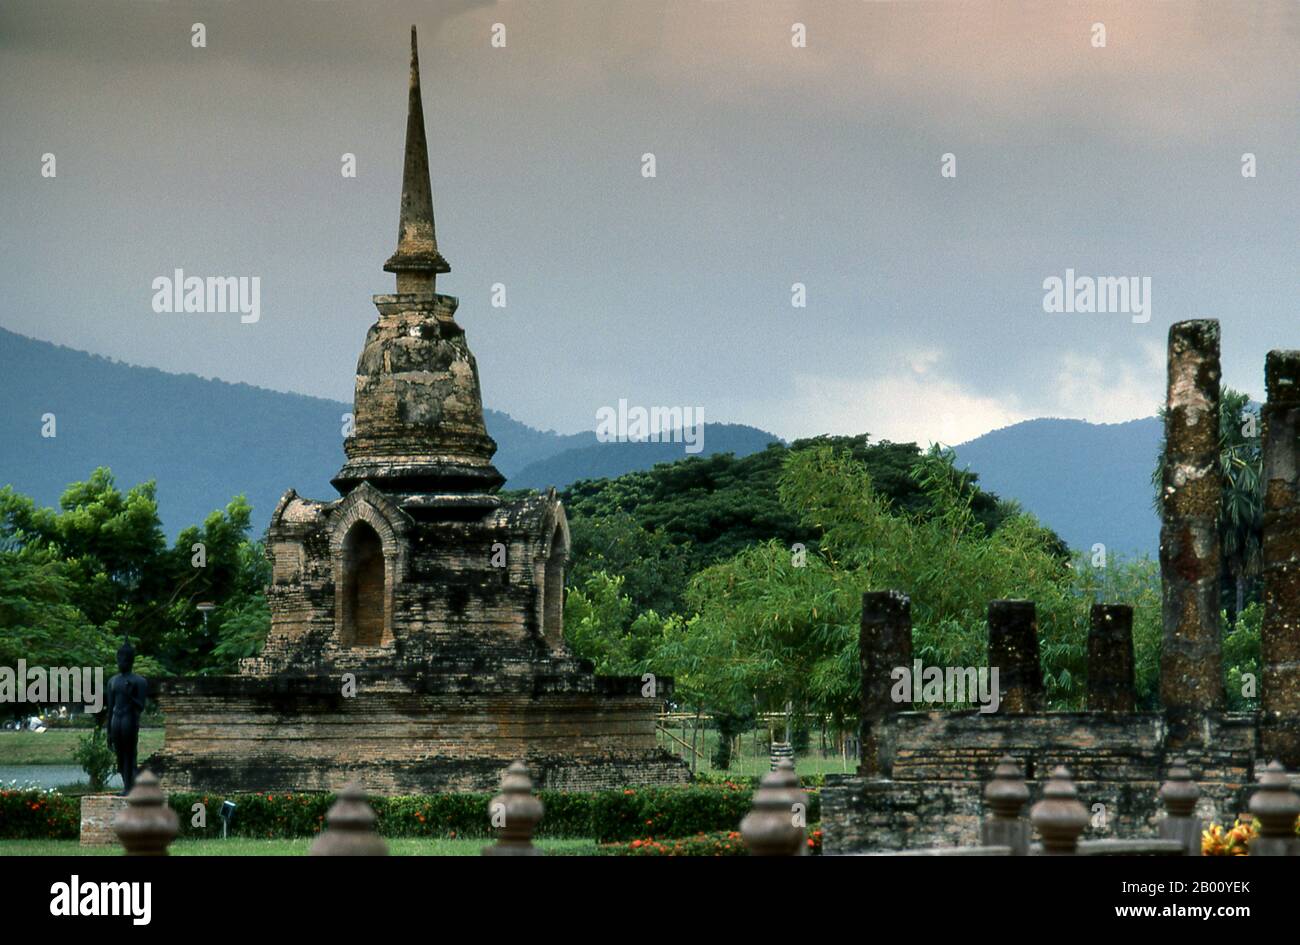 Thailand: Monsunwolken über Wat Sa Si, Sukhothai Historischer Park. Sukhothai, was wörtlich "Dawn of Happiness" bedeutet, war die Hauptstadt des Sukhothai-Königreichs und wurde 1238 gegründet. Es war die Hauptstadt des thailändischen Reiches für etwa 140 Jahre. Stockfoto